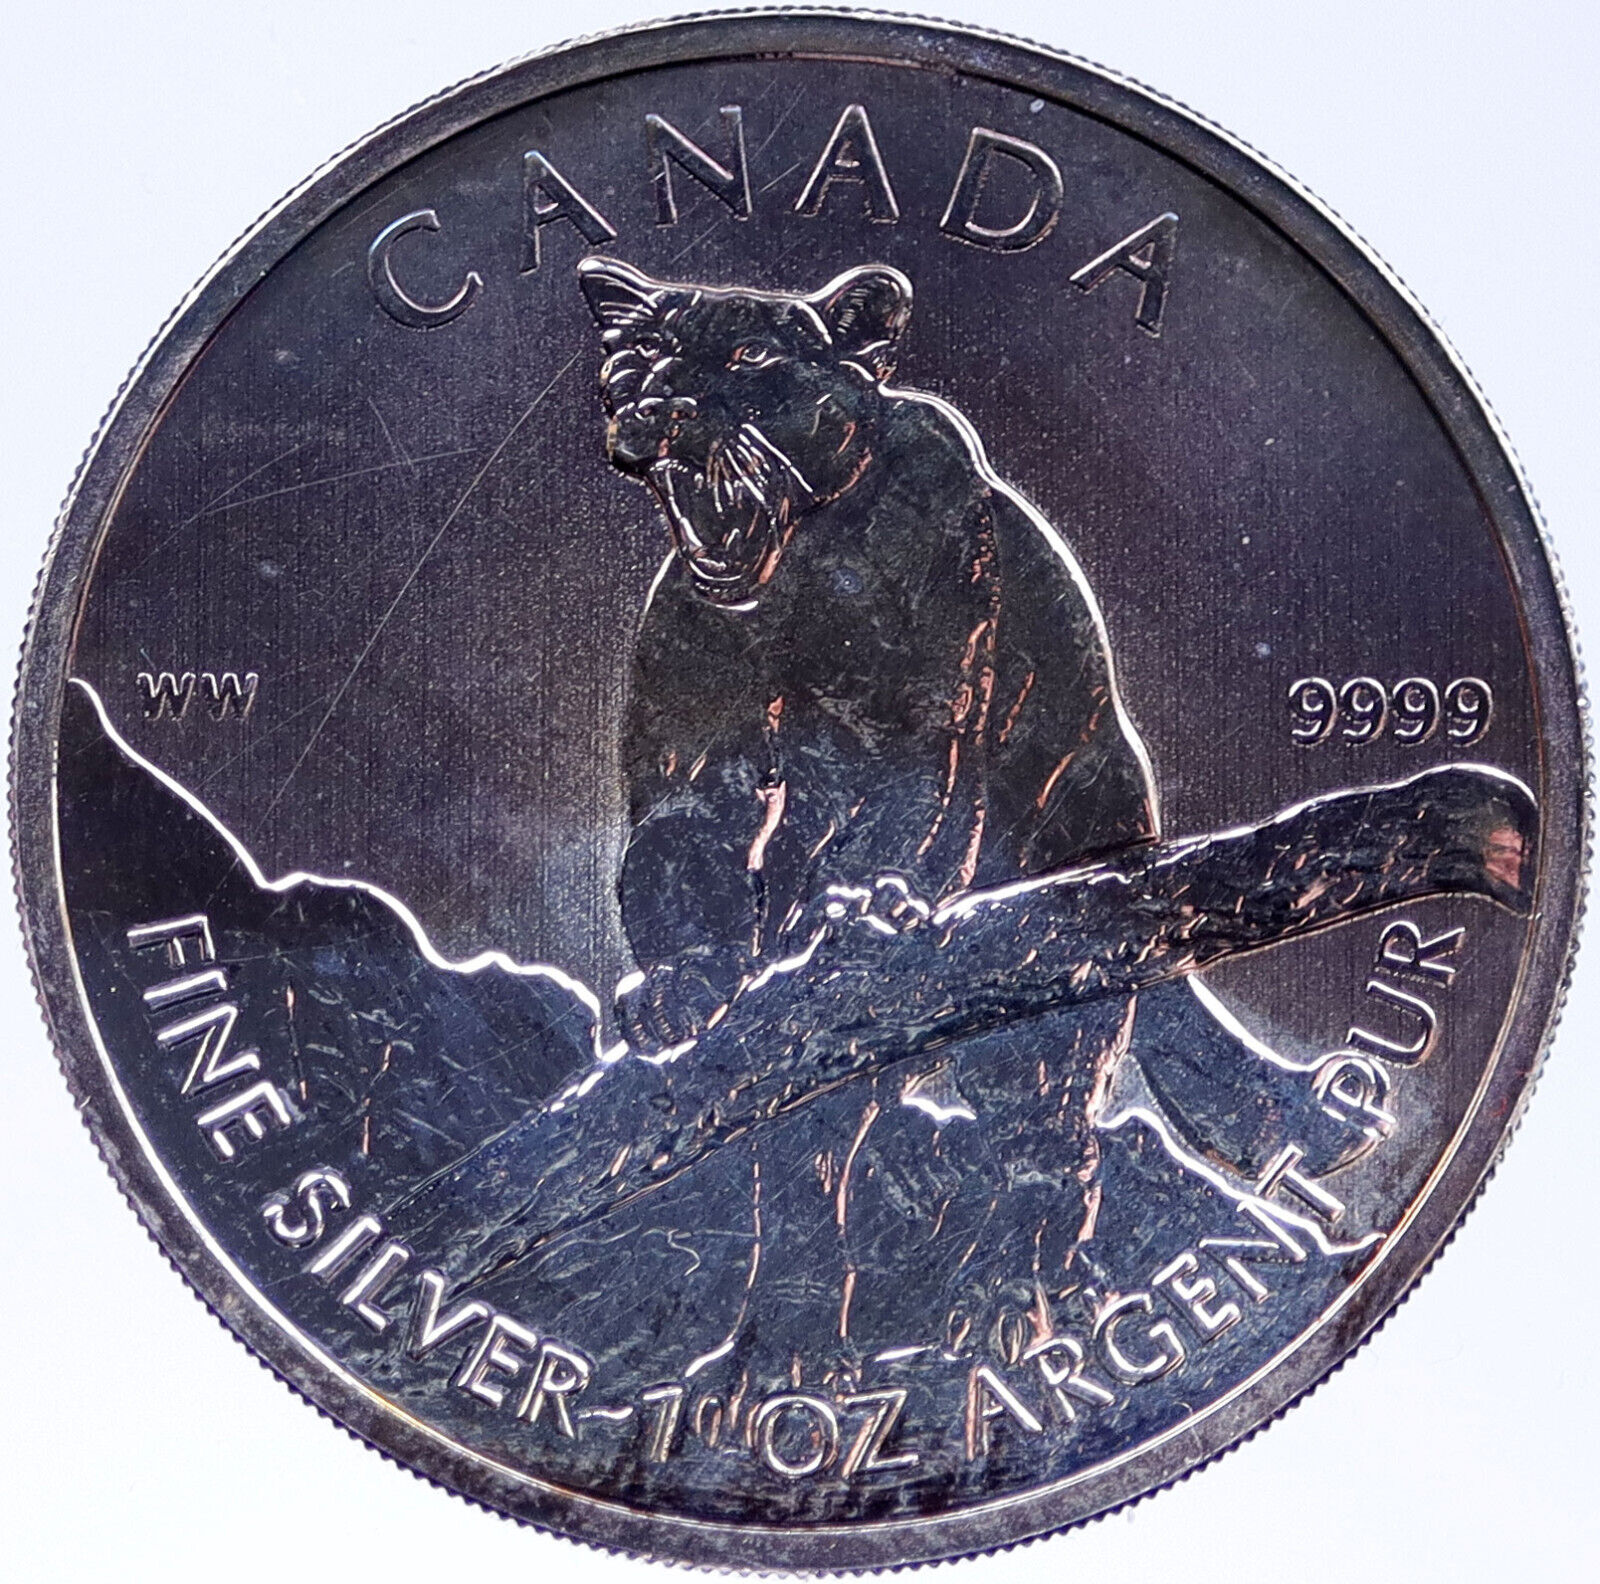 2012 CANADA Silver 5 Dollar CanadianCOUGAR Coin UK Queen Elizabeth II i118970